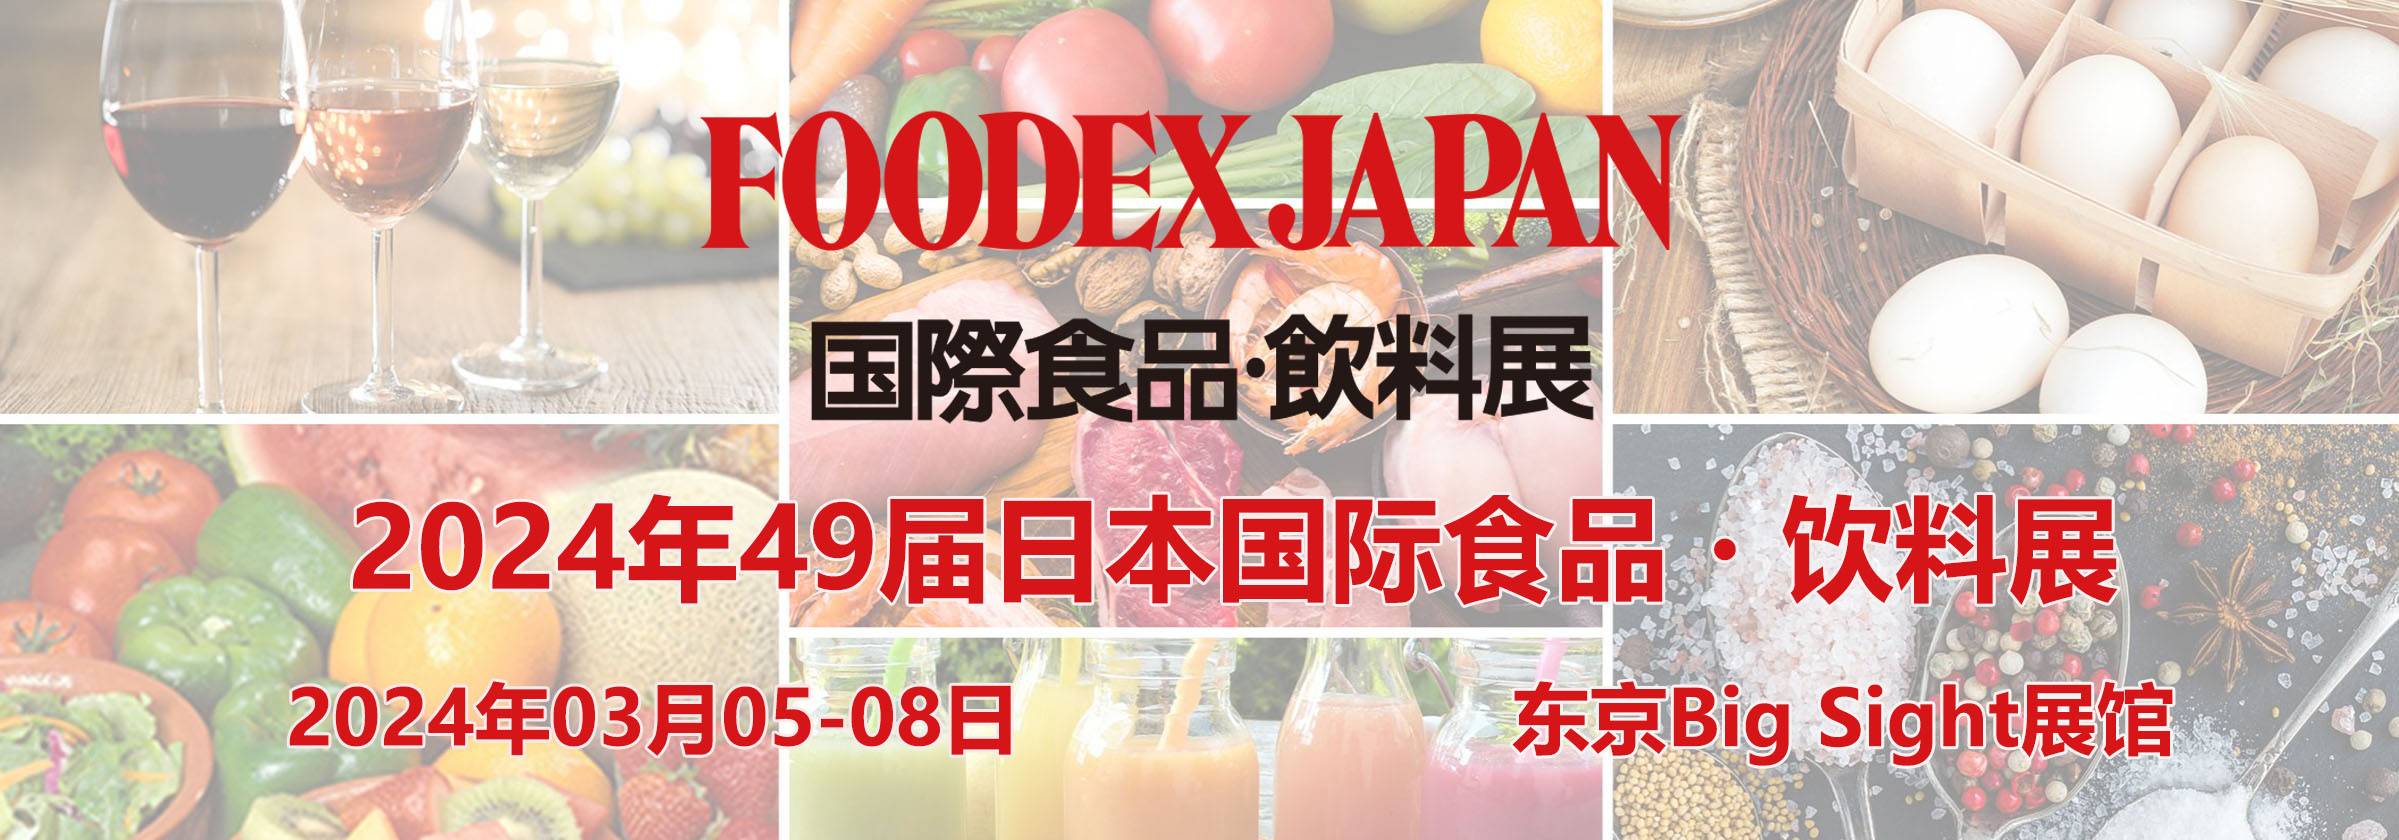 2023年第49届日本国际食品・饮料展首页日本食品展_日本饮料展_FOODEX_JAPAN_日本食品饮料展